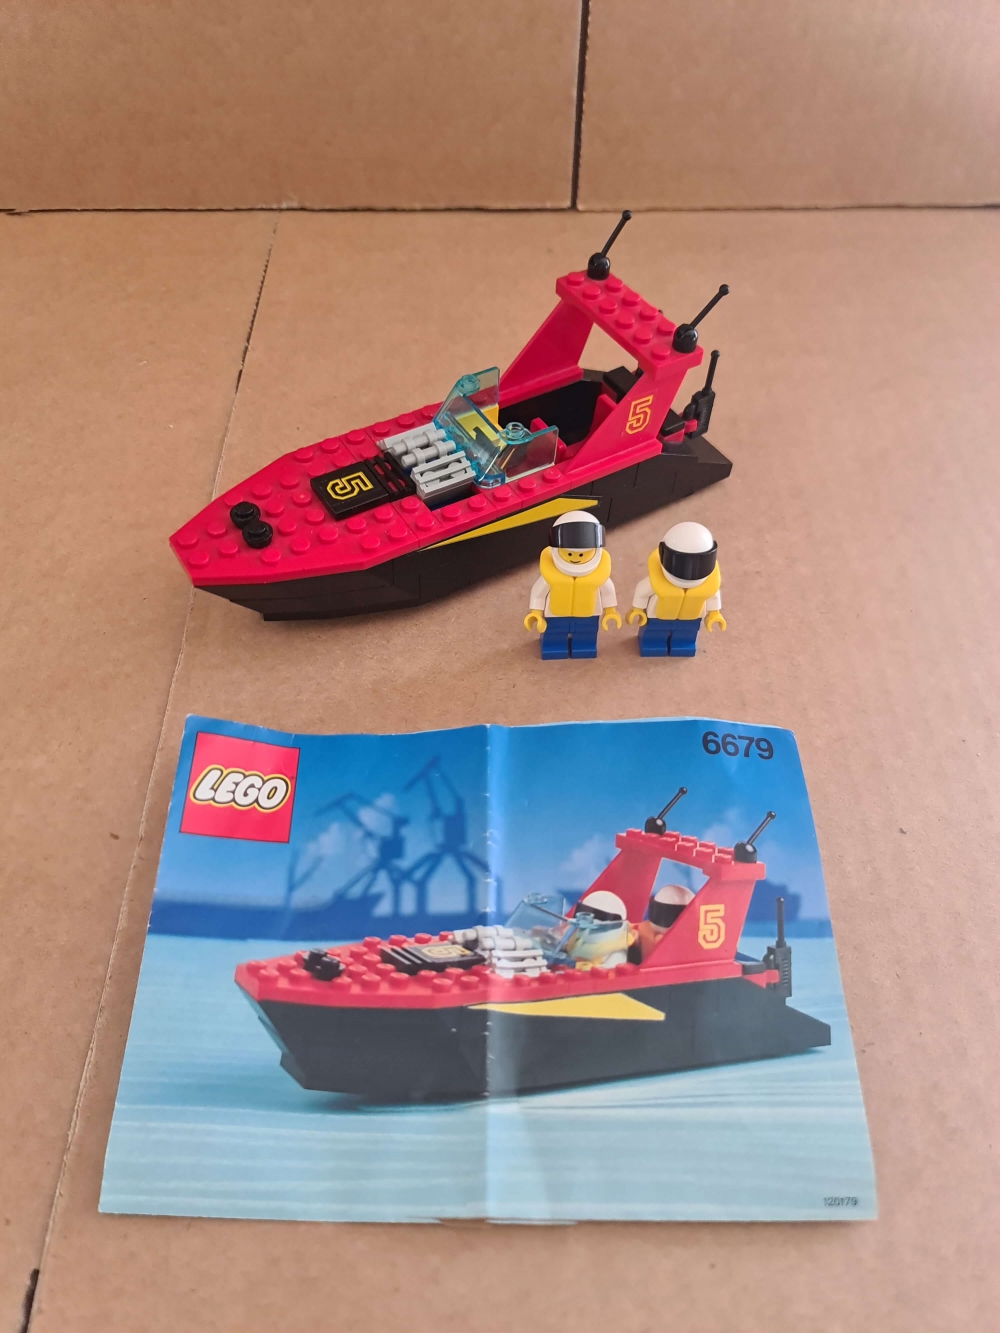 Sett 6679 fra Lego Classic Town serien.
Flott sett. Komplett med manual.